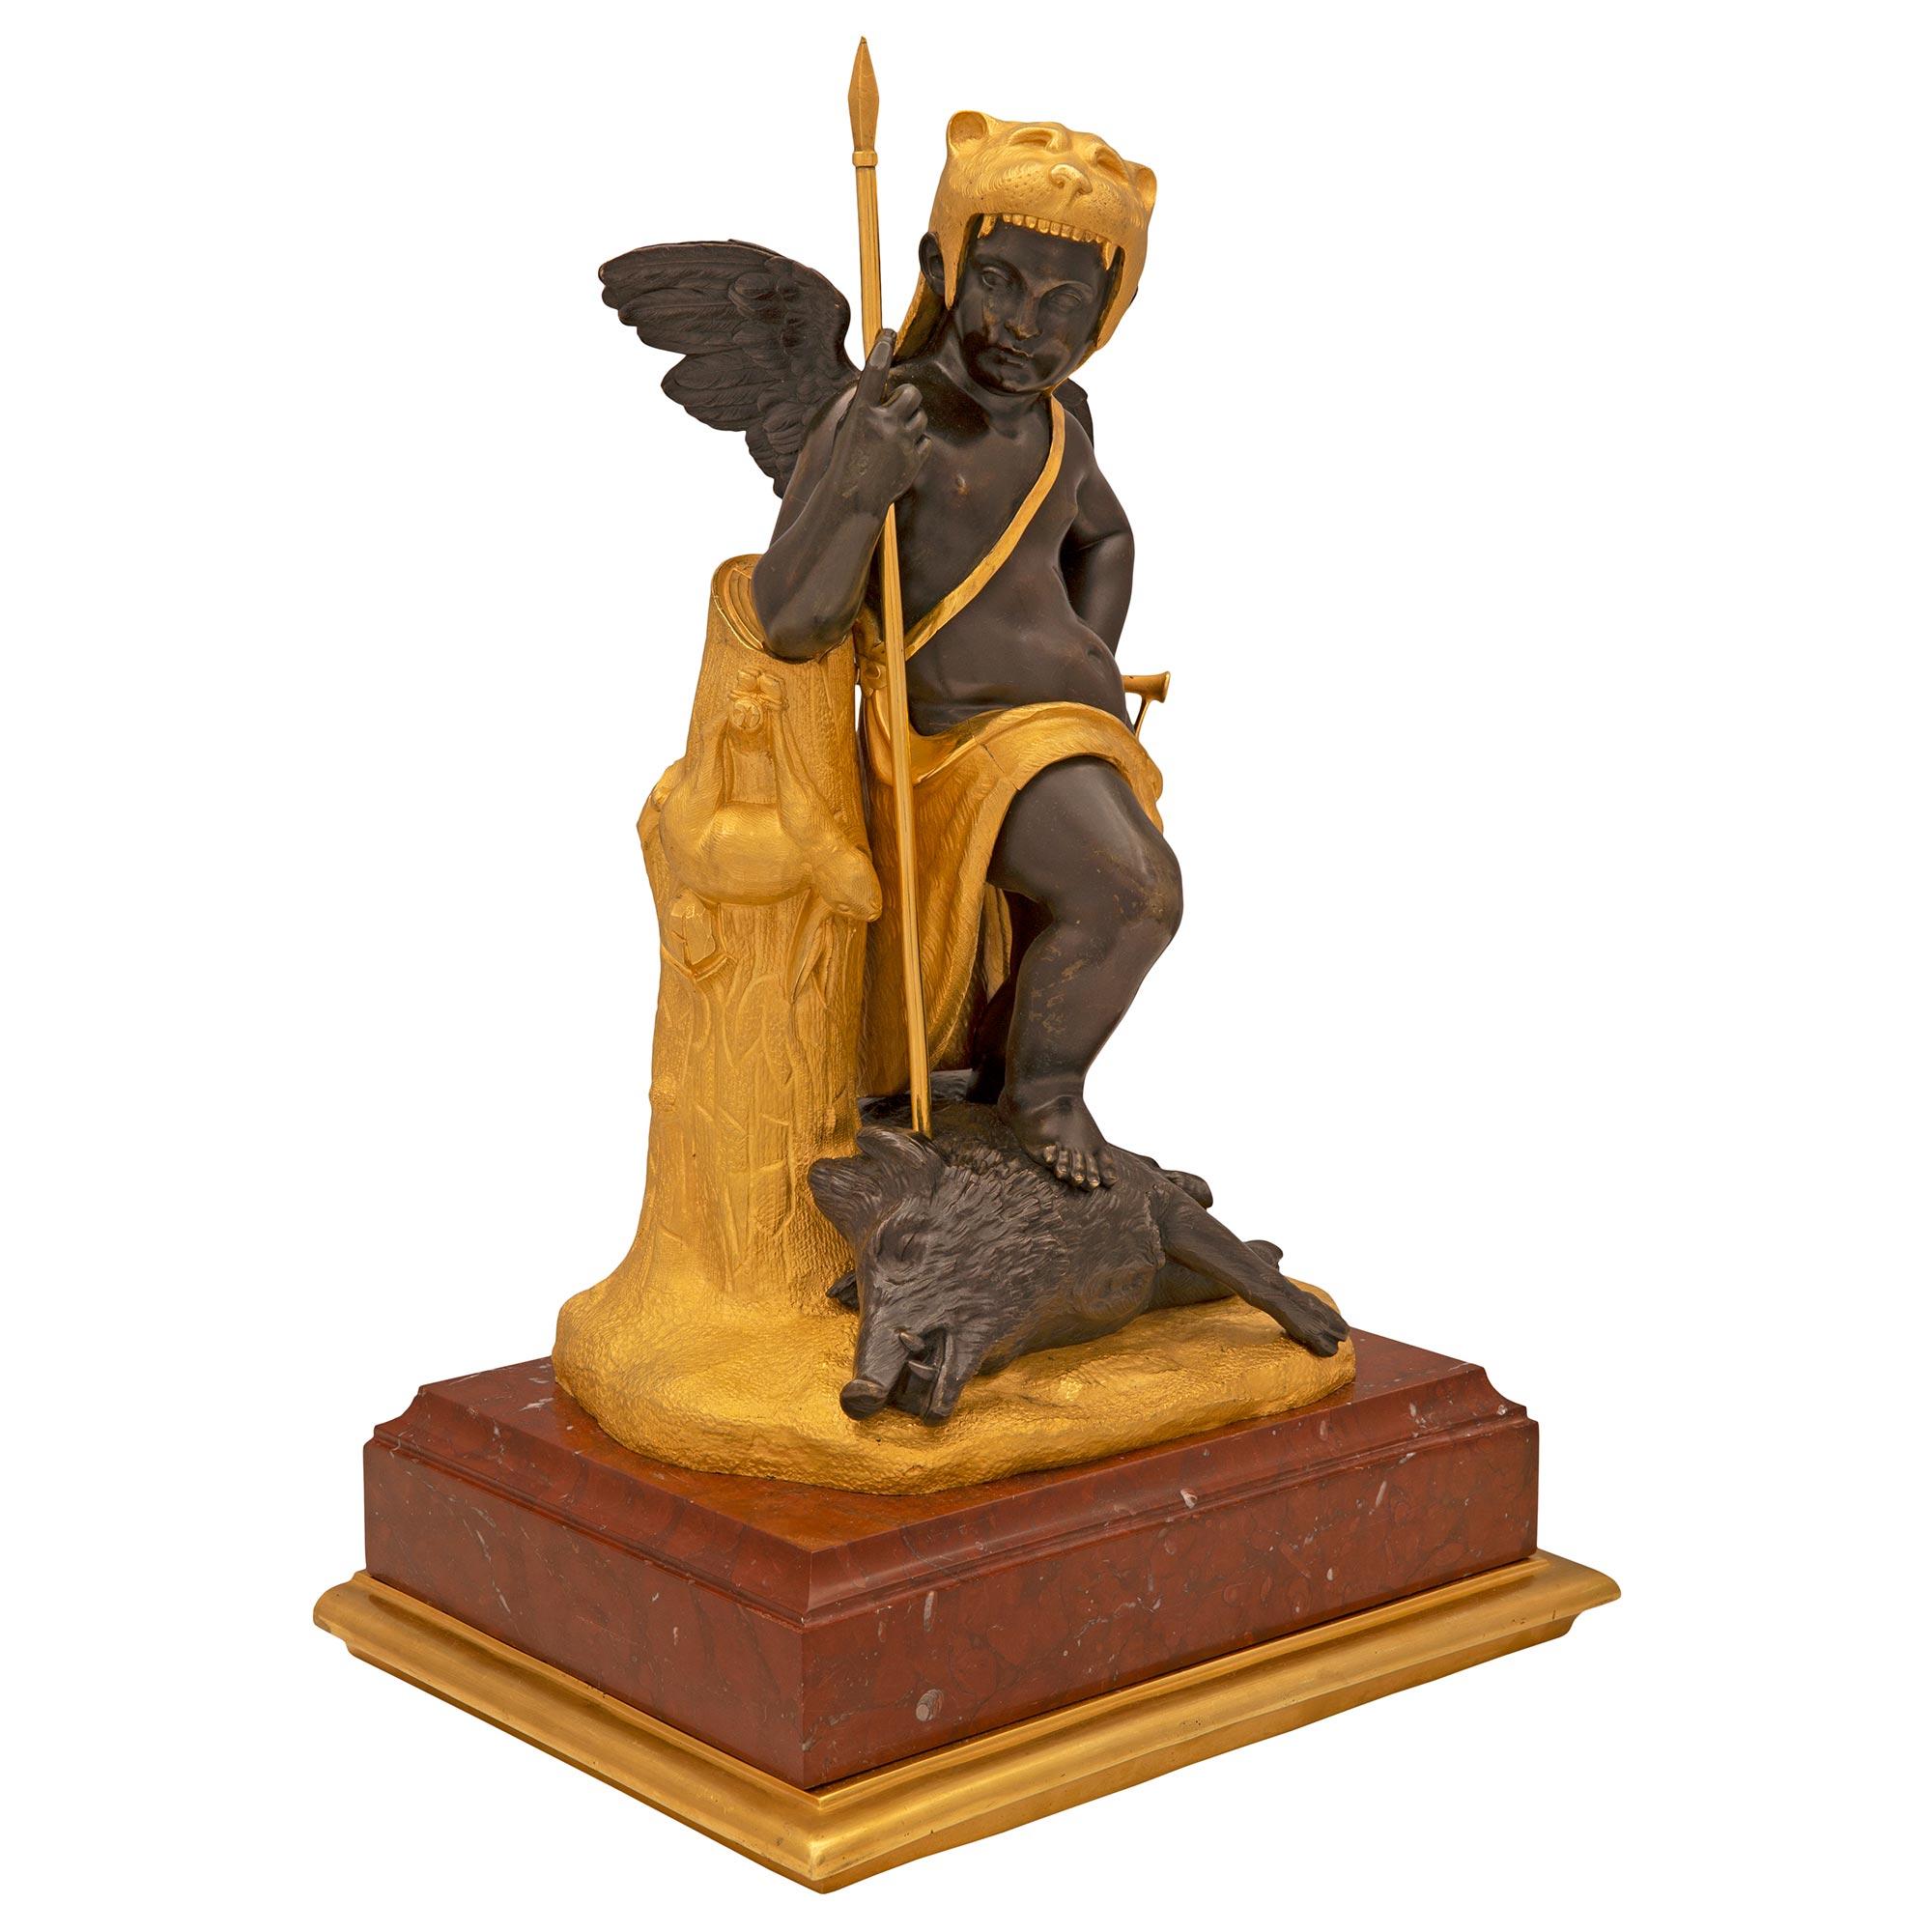 Magnifique statue française du XIXe siècle, de style Louis XVI, en bronze patiné, bronze doré et marbre Rouge Griotte. La statue est surélevée par un socle carré en marbre Rouge Griotte avec une très élégante bande en bronze doré moucheté. Au centre